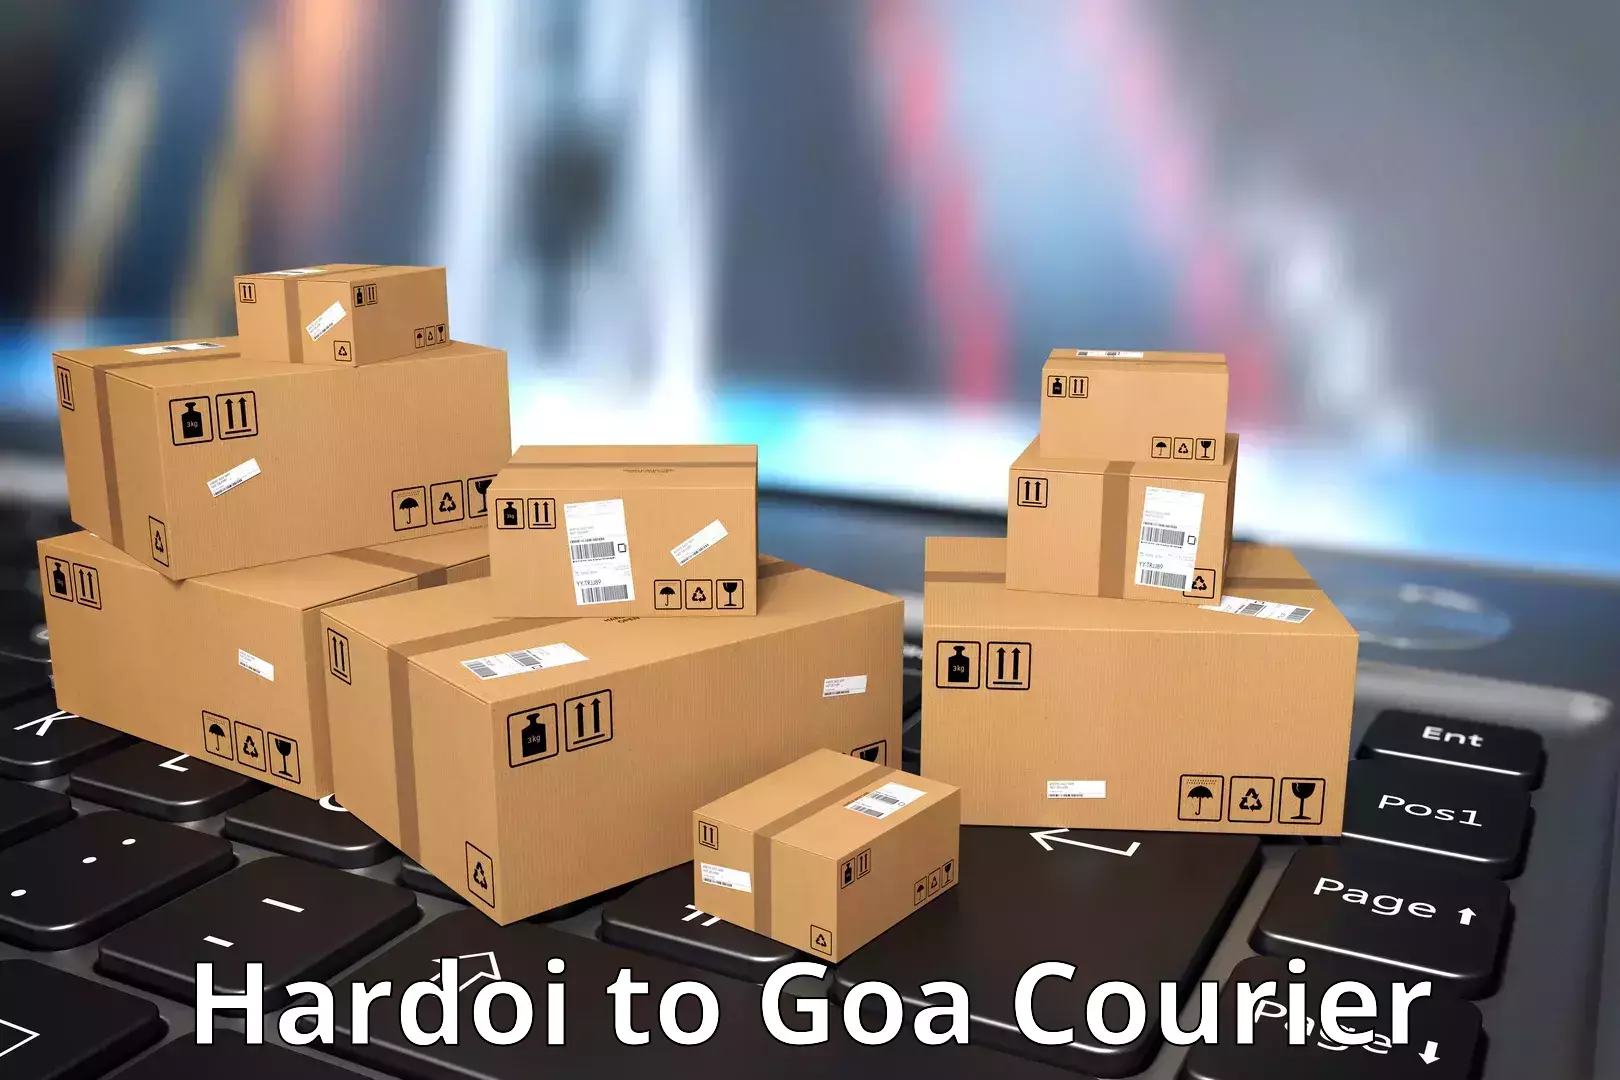 24-hour courier service Hardoi to Panjim